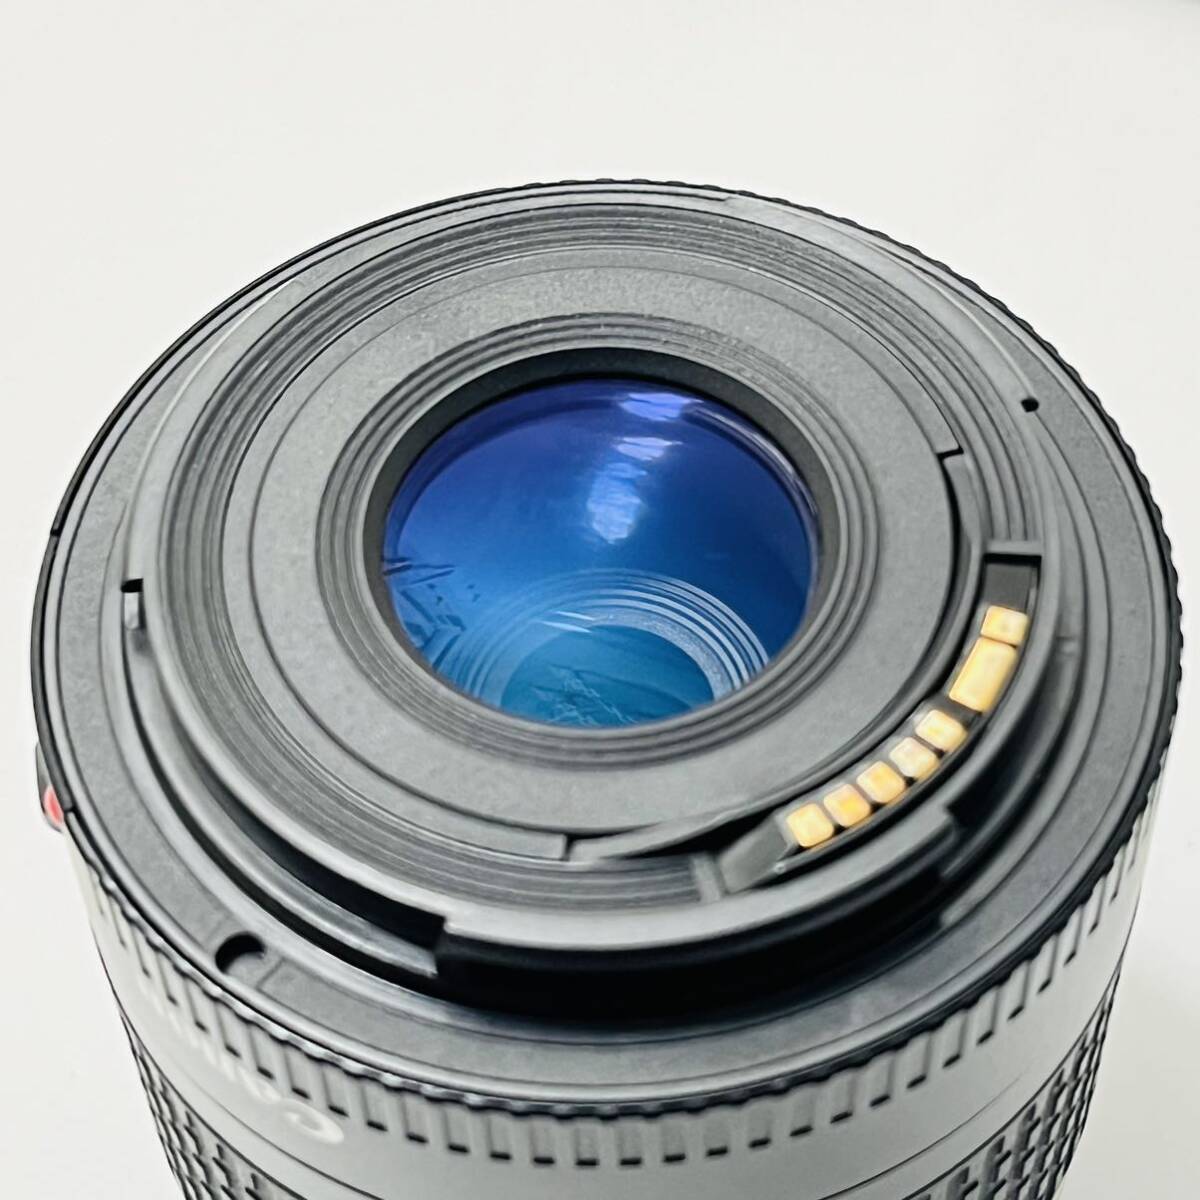 Canonフィルムカメラ EOS Kiss イオス キス キャノン レンズ ULTRASONIC 0.38m/1.3ft AF 28-80mmの画像6